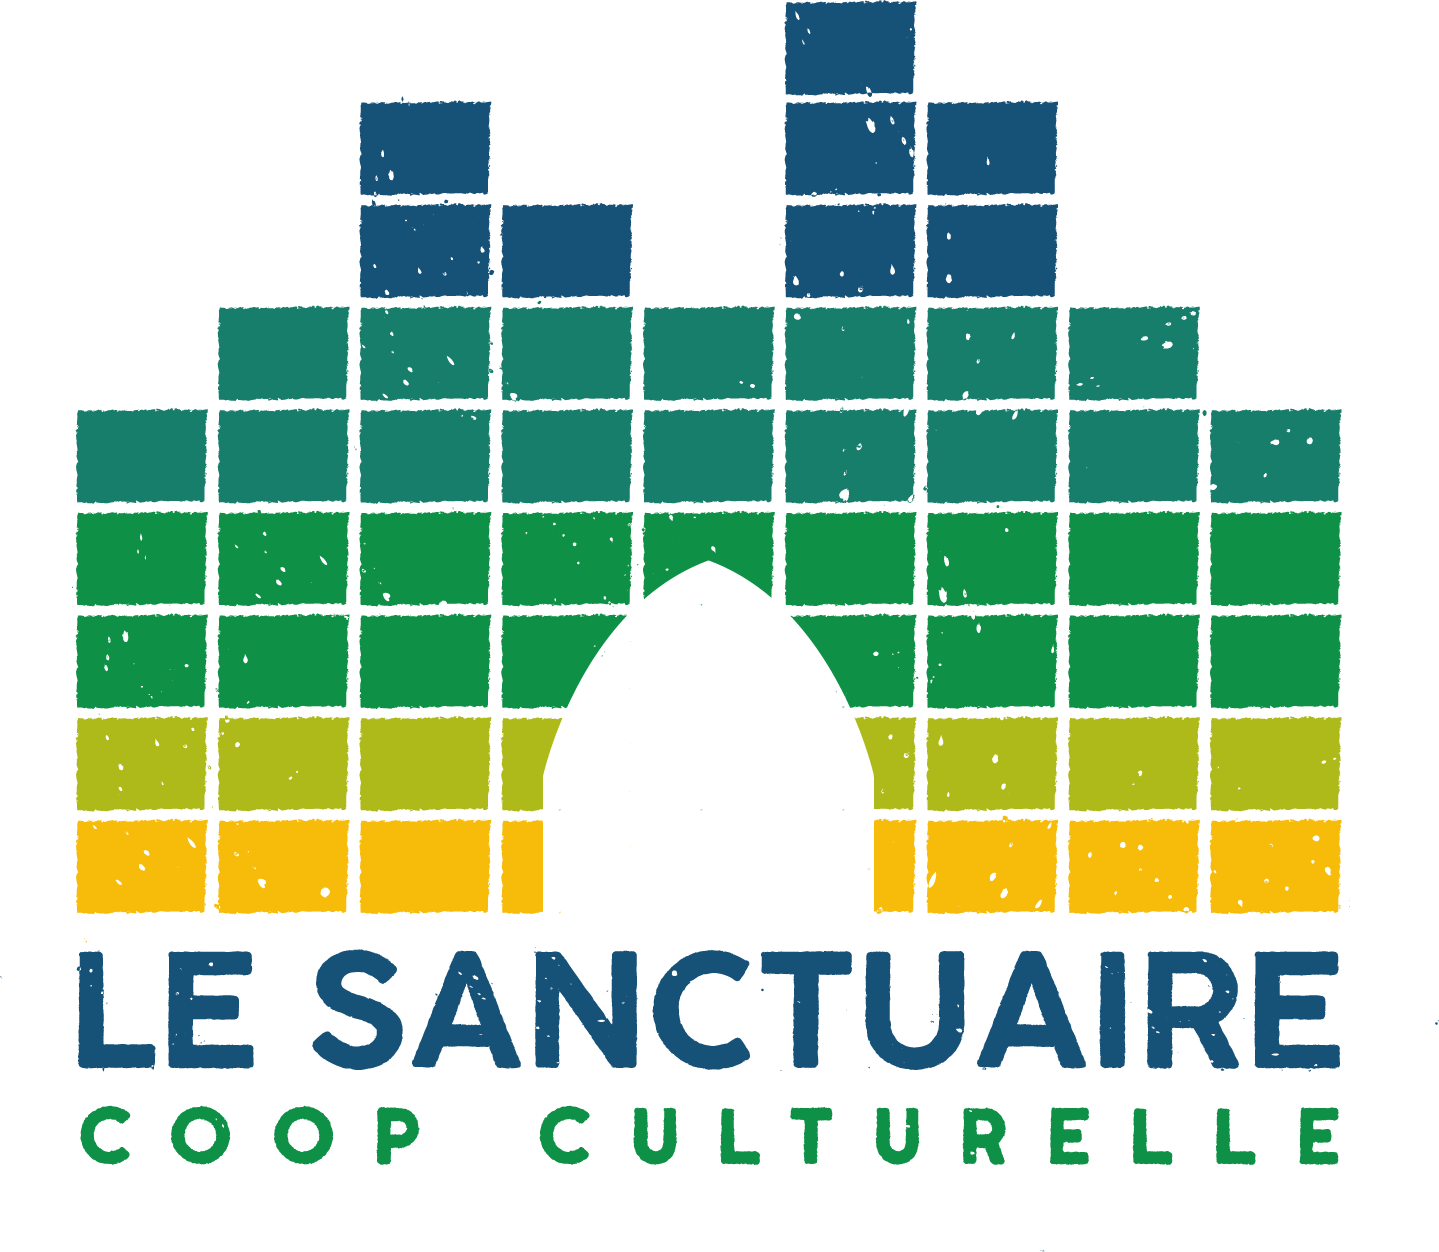 Le Sanctuaire - Coop Culturelle